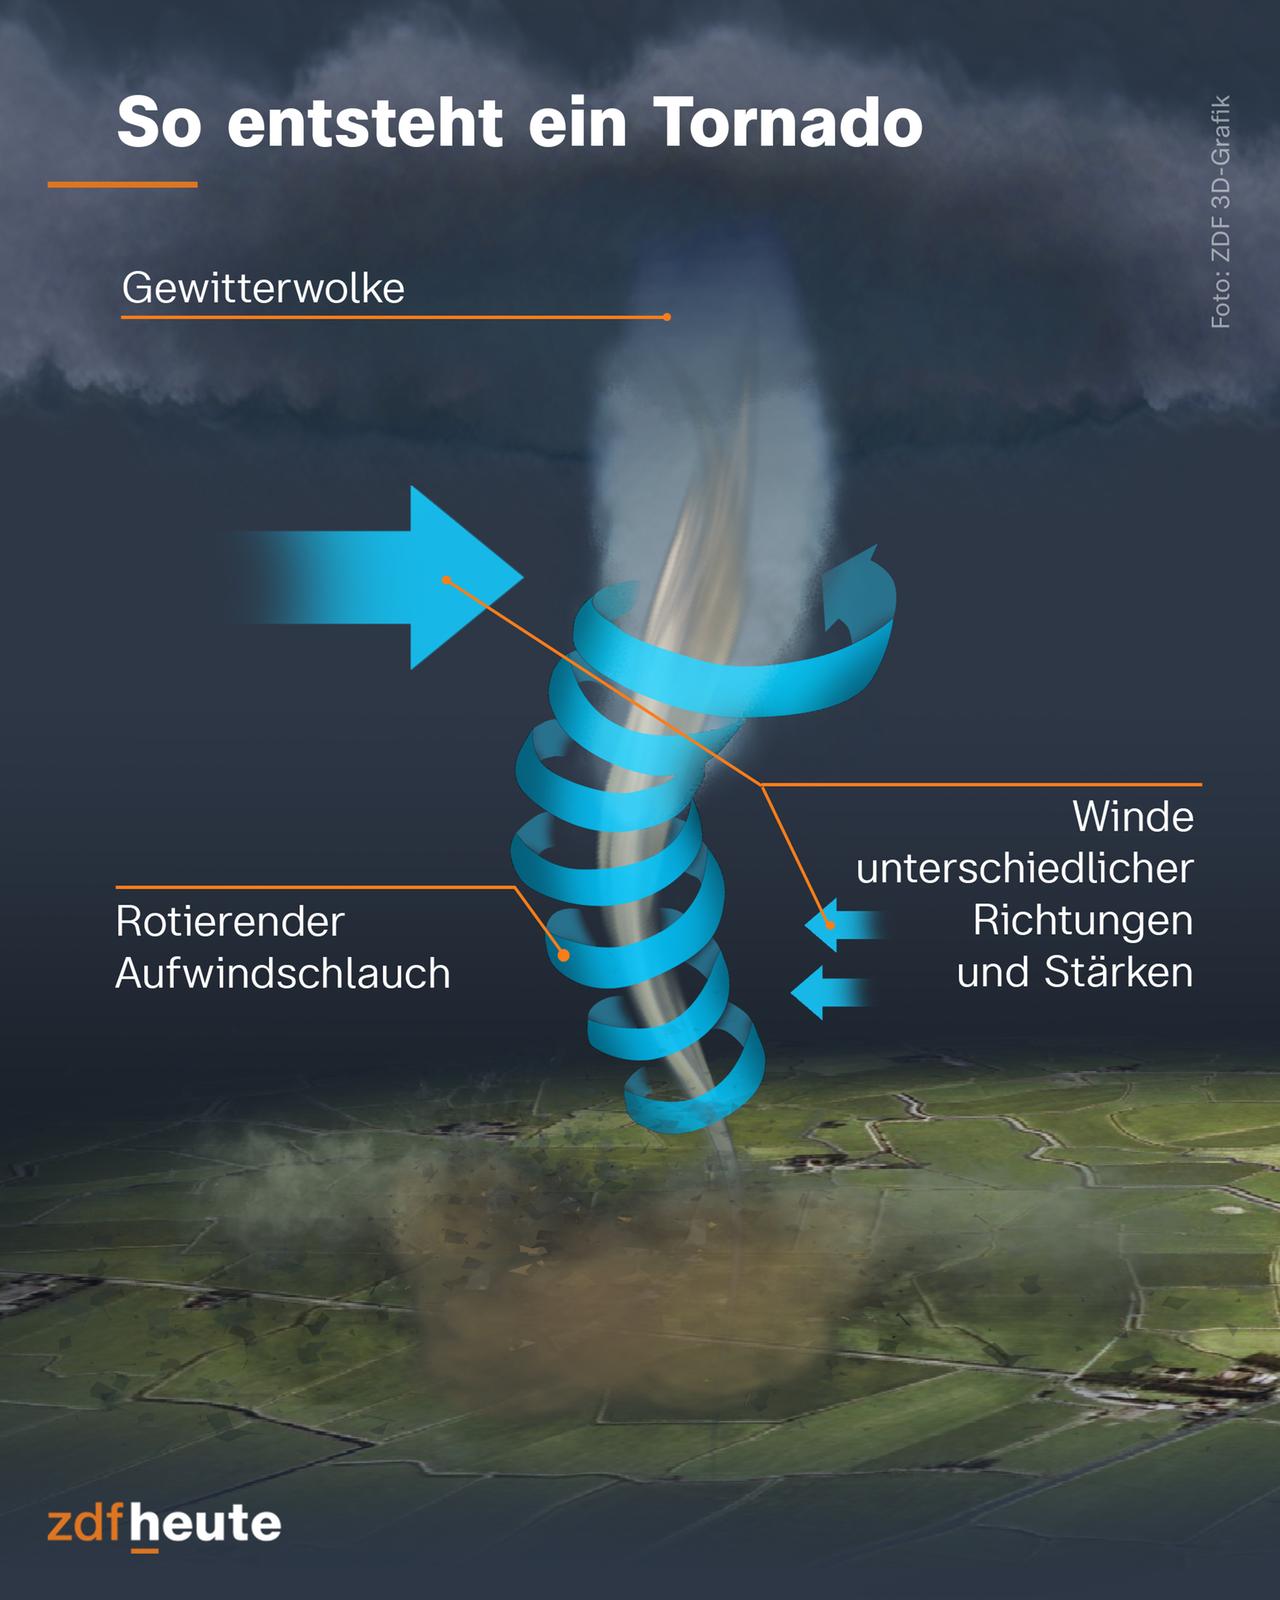 So entsteht ein Tornado: Der rotierende Aufwindschlauch, der vom Unterrand der Gewitterwolke bis zum Boden reicht, kann entstehen, wenn sich mit der Höhe der Wind stark ändert, wenn er an Stärke zunimmt und die Windrichtung sich ändert.